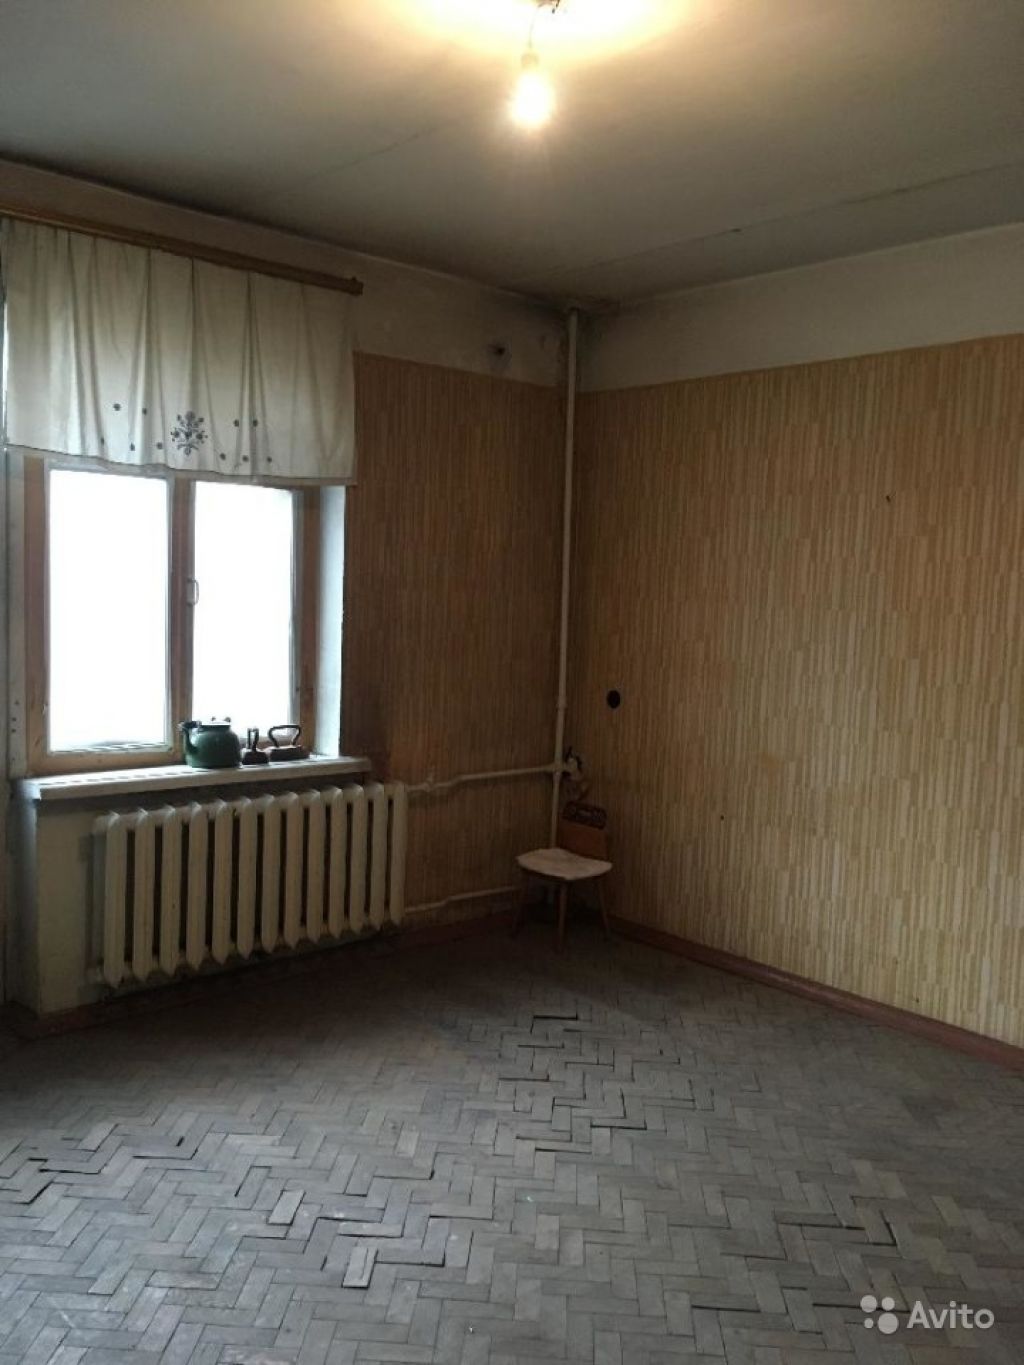 Продам комнату Комната 17 м² в 3-к квартире на 3 этаже 8-этажного кирпичного дома в Москве. Фото 1